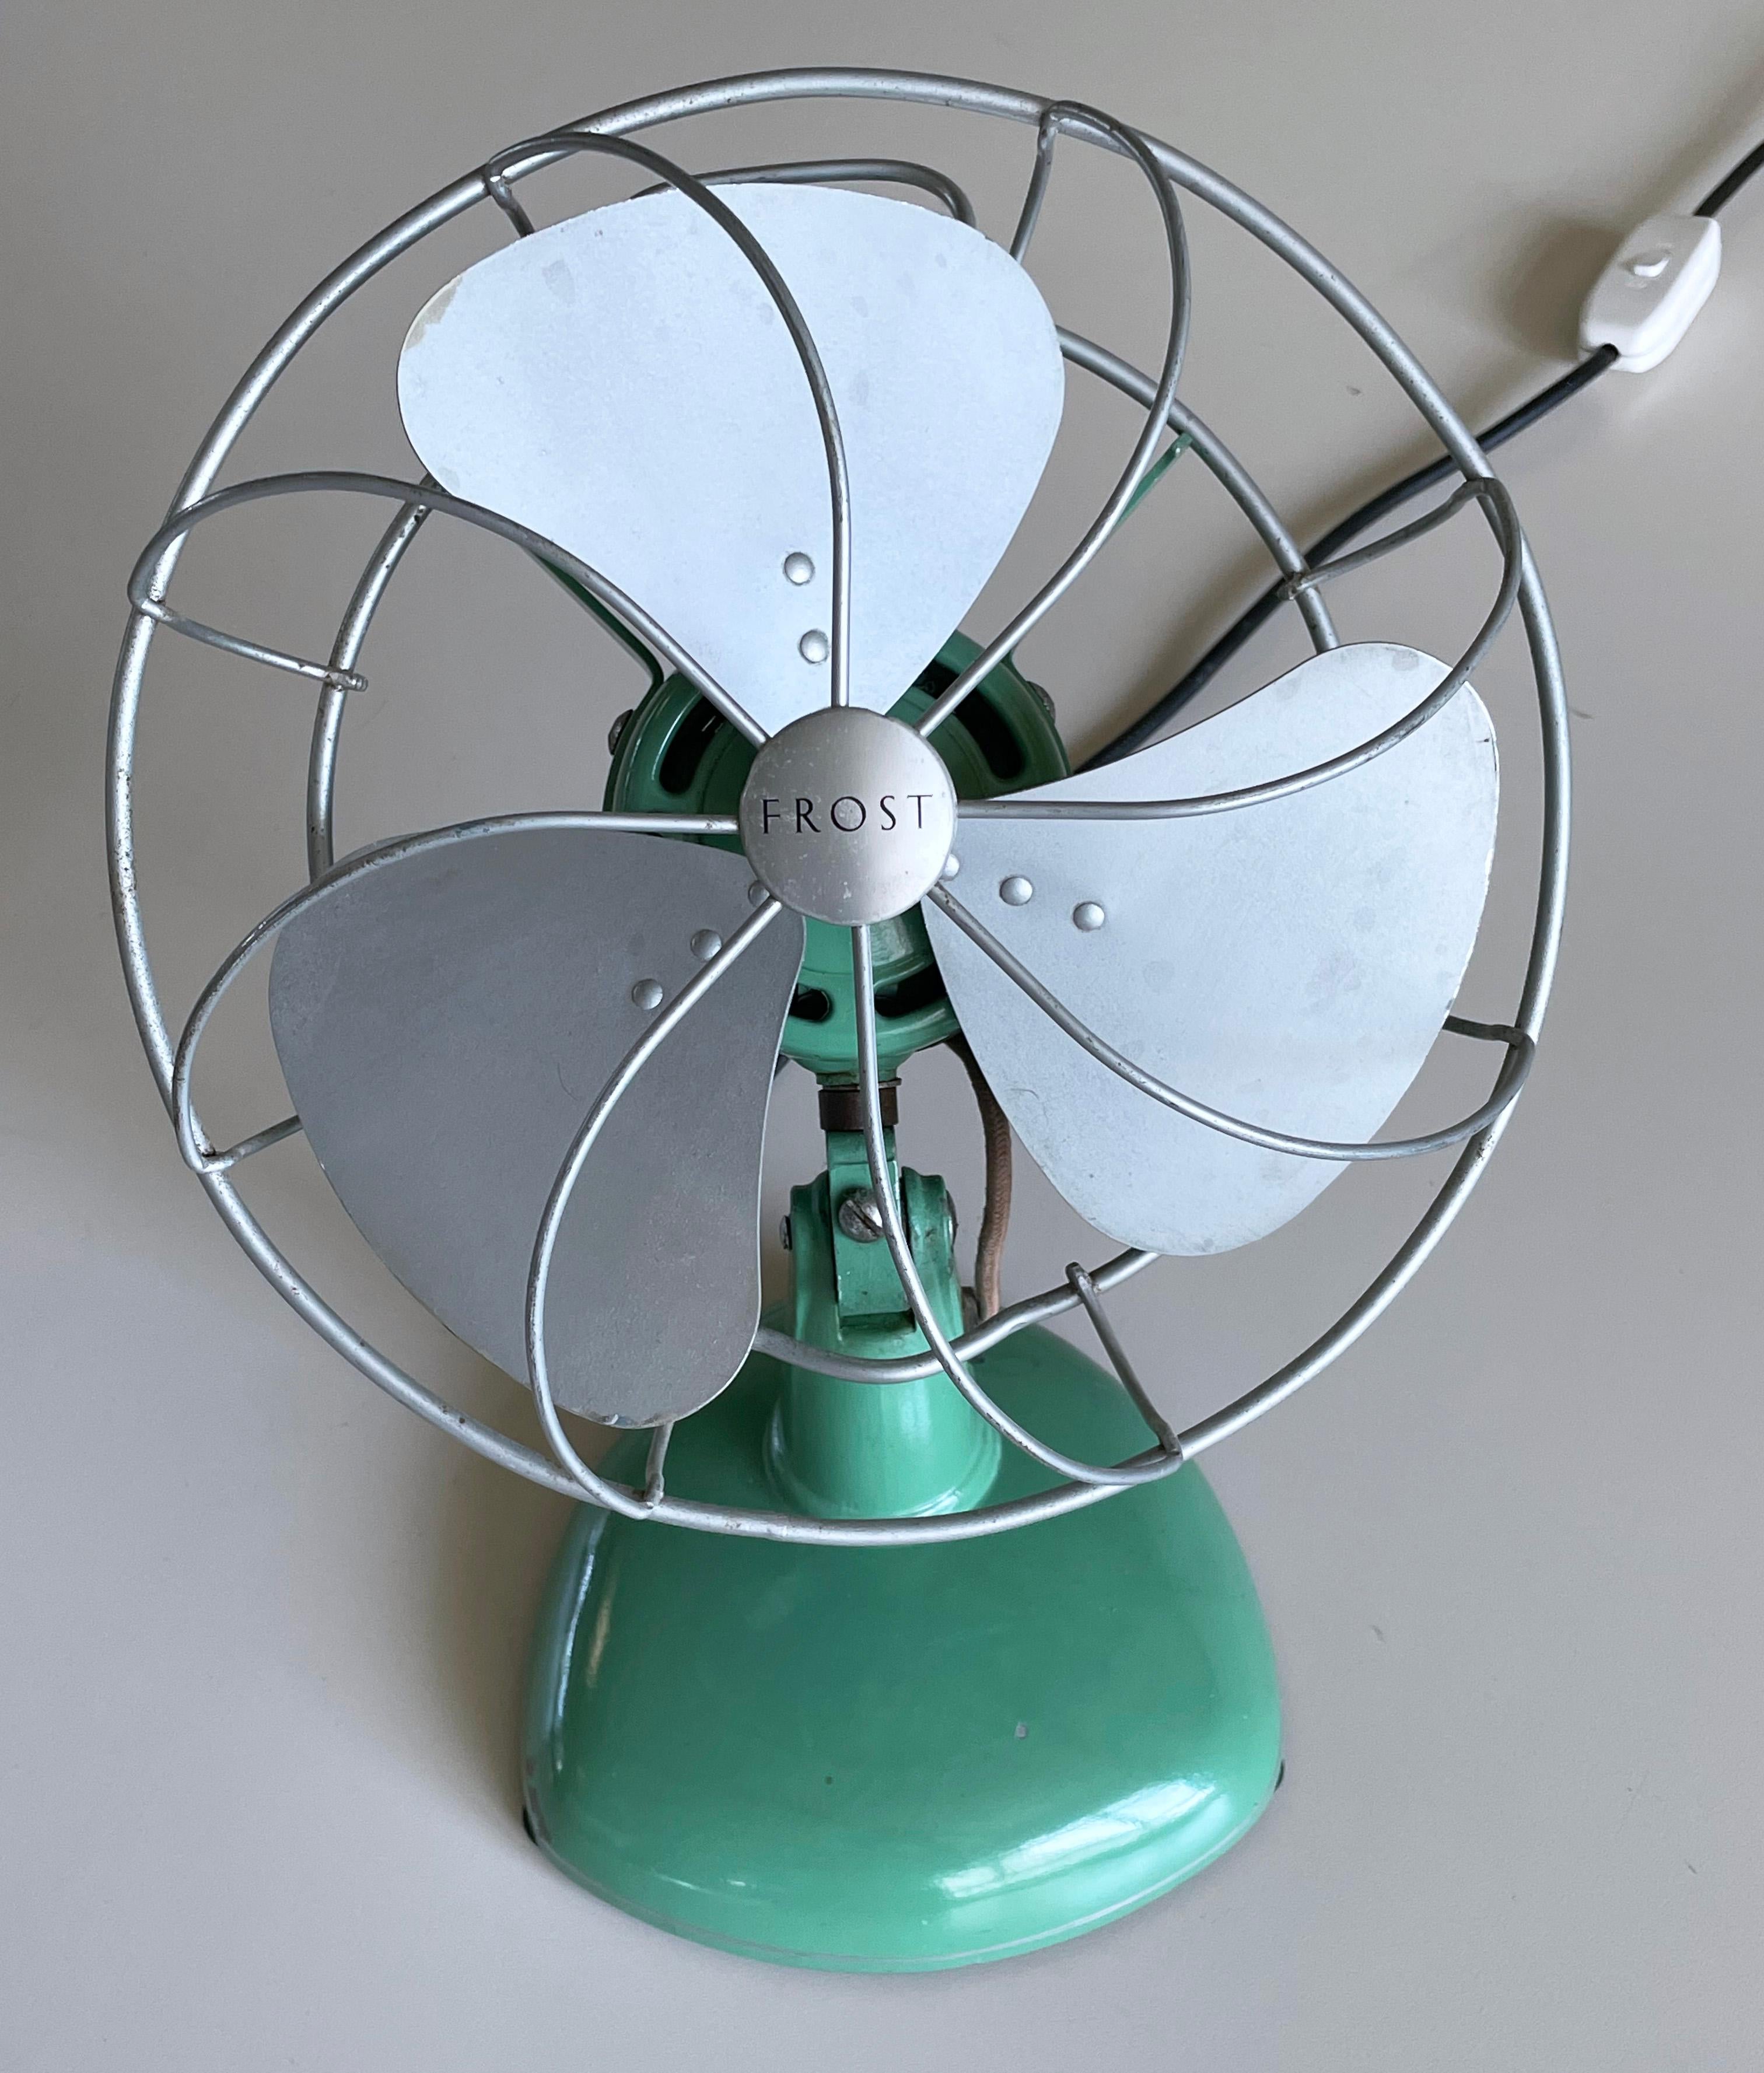 1950’s FROST triple blade oscillating desk fan / ventilator For Sale 4